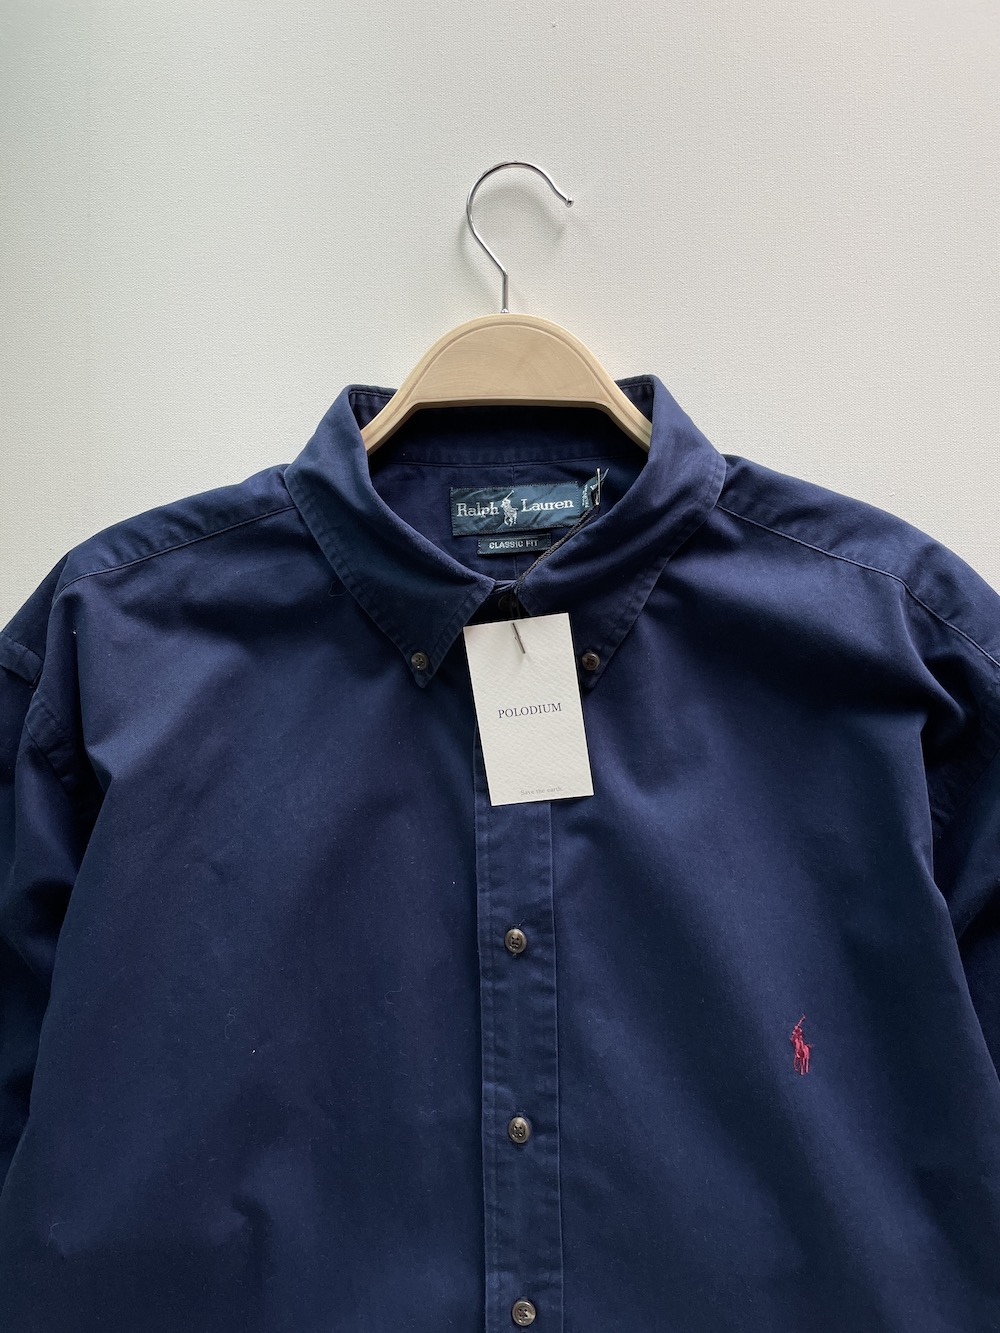 [ XLT ] Polo Ralph Lauren Shirt (5913)